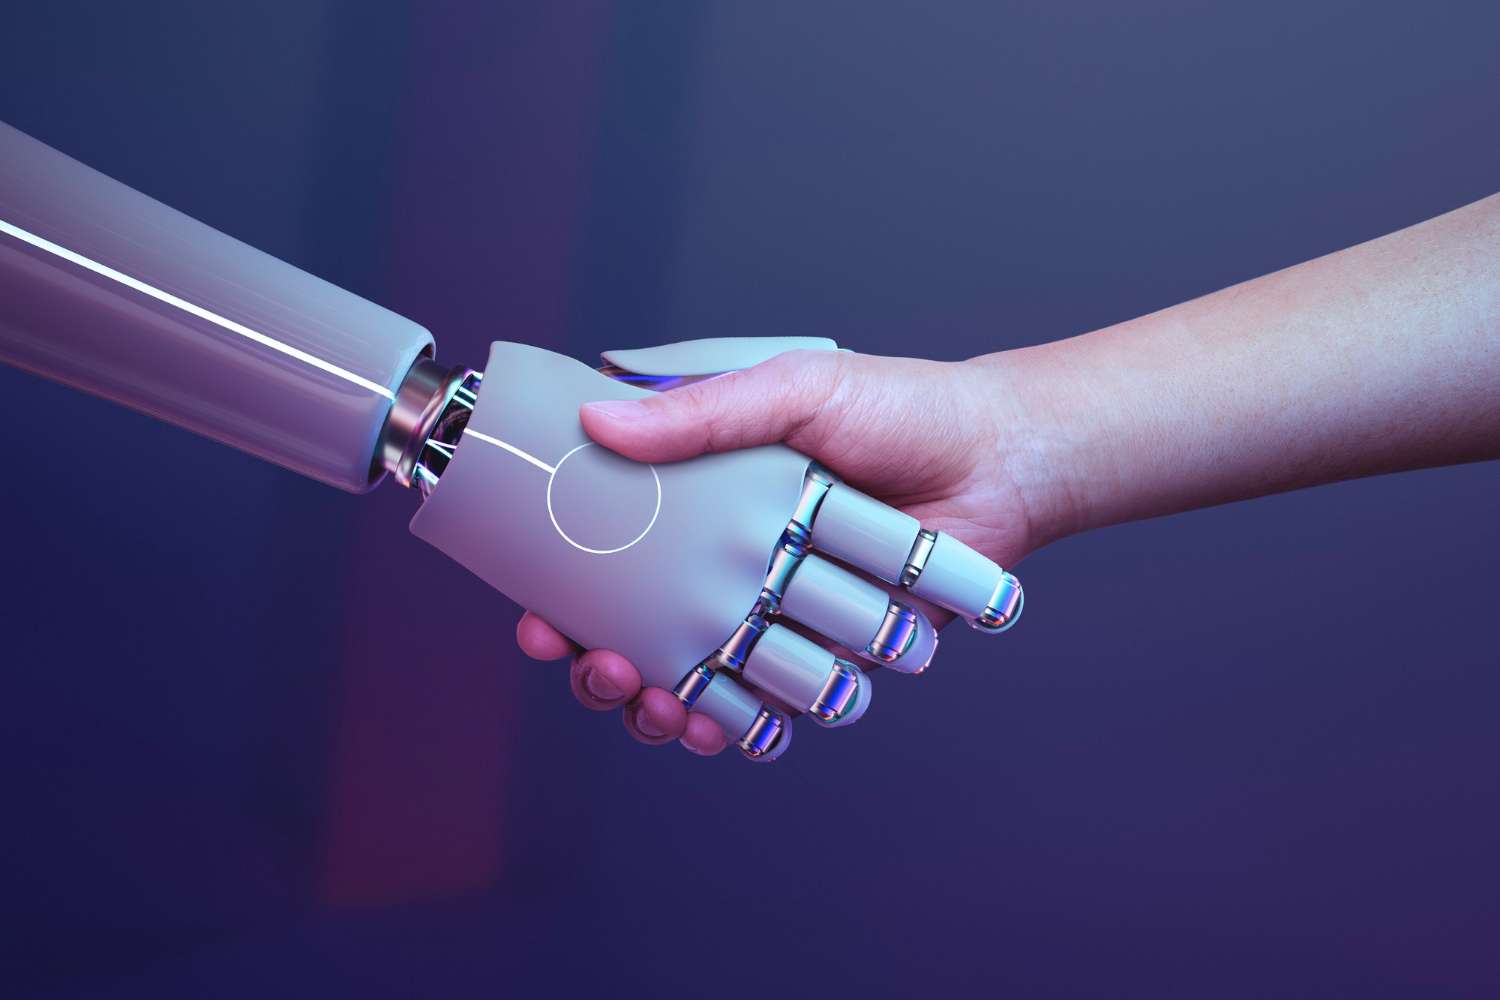 Human and robot's handshake.